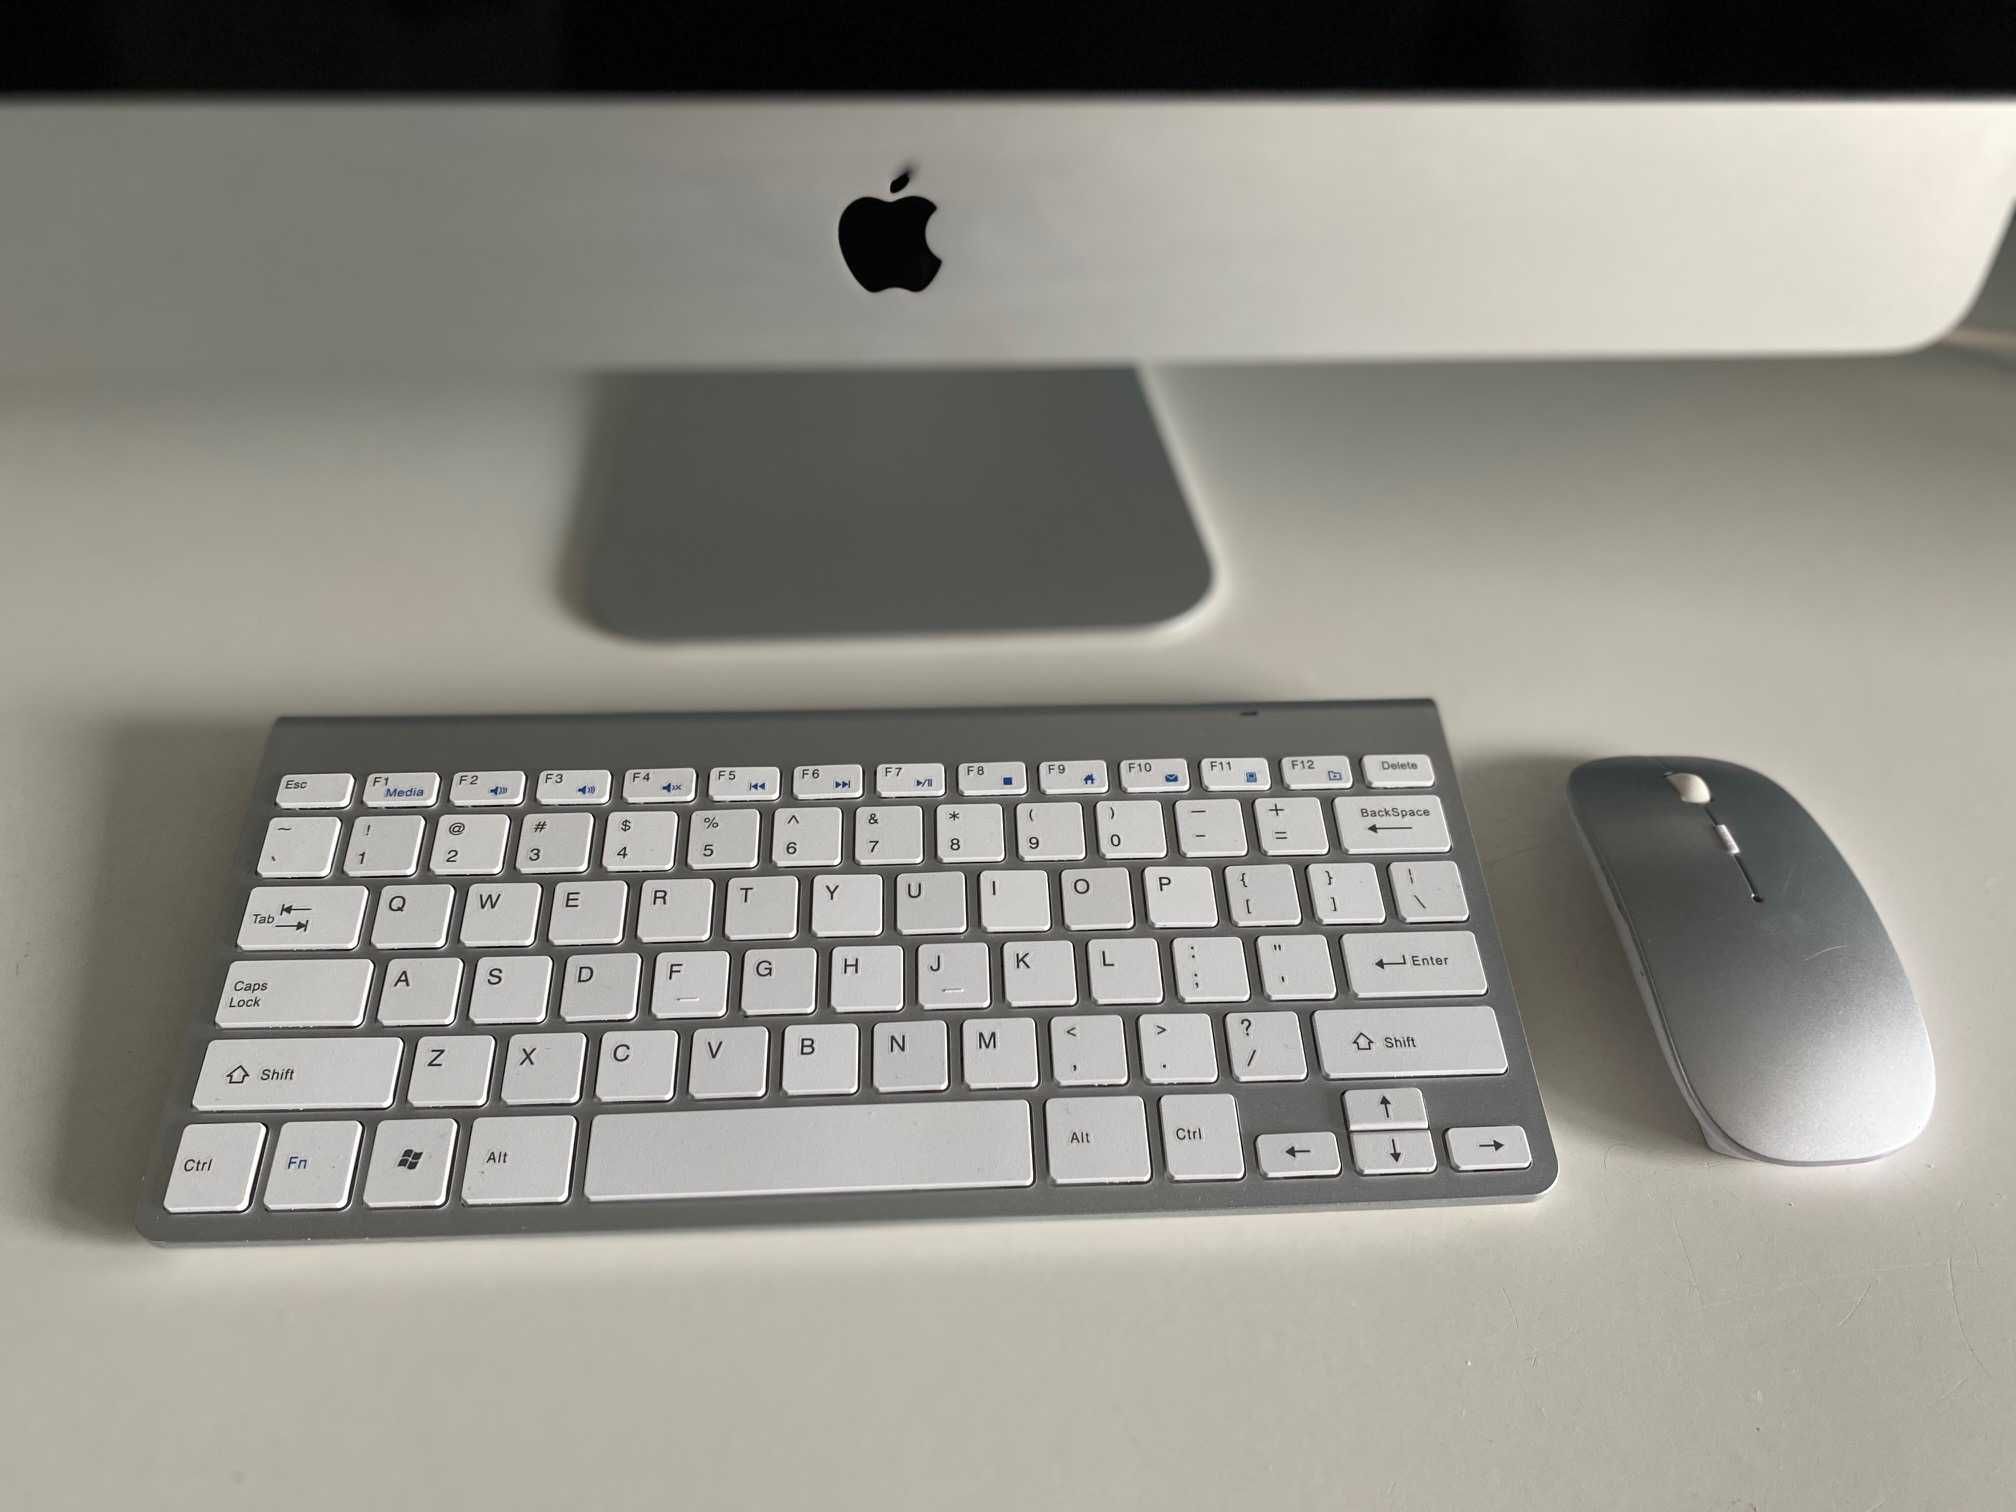 iMac 21.5” 2011 stan/i3/16GB/1TB+ 500 SSD 512 RAM